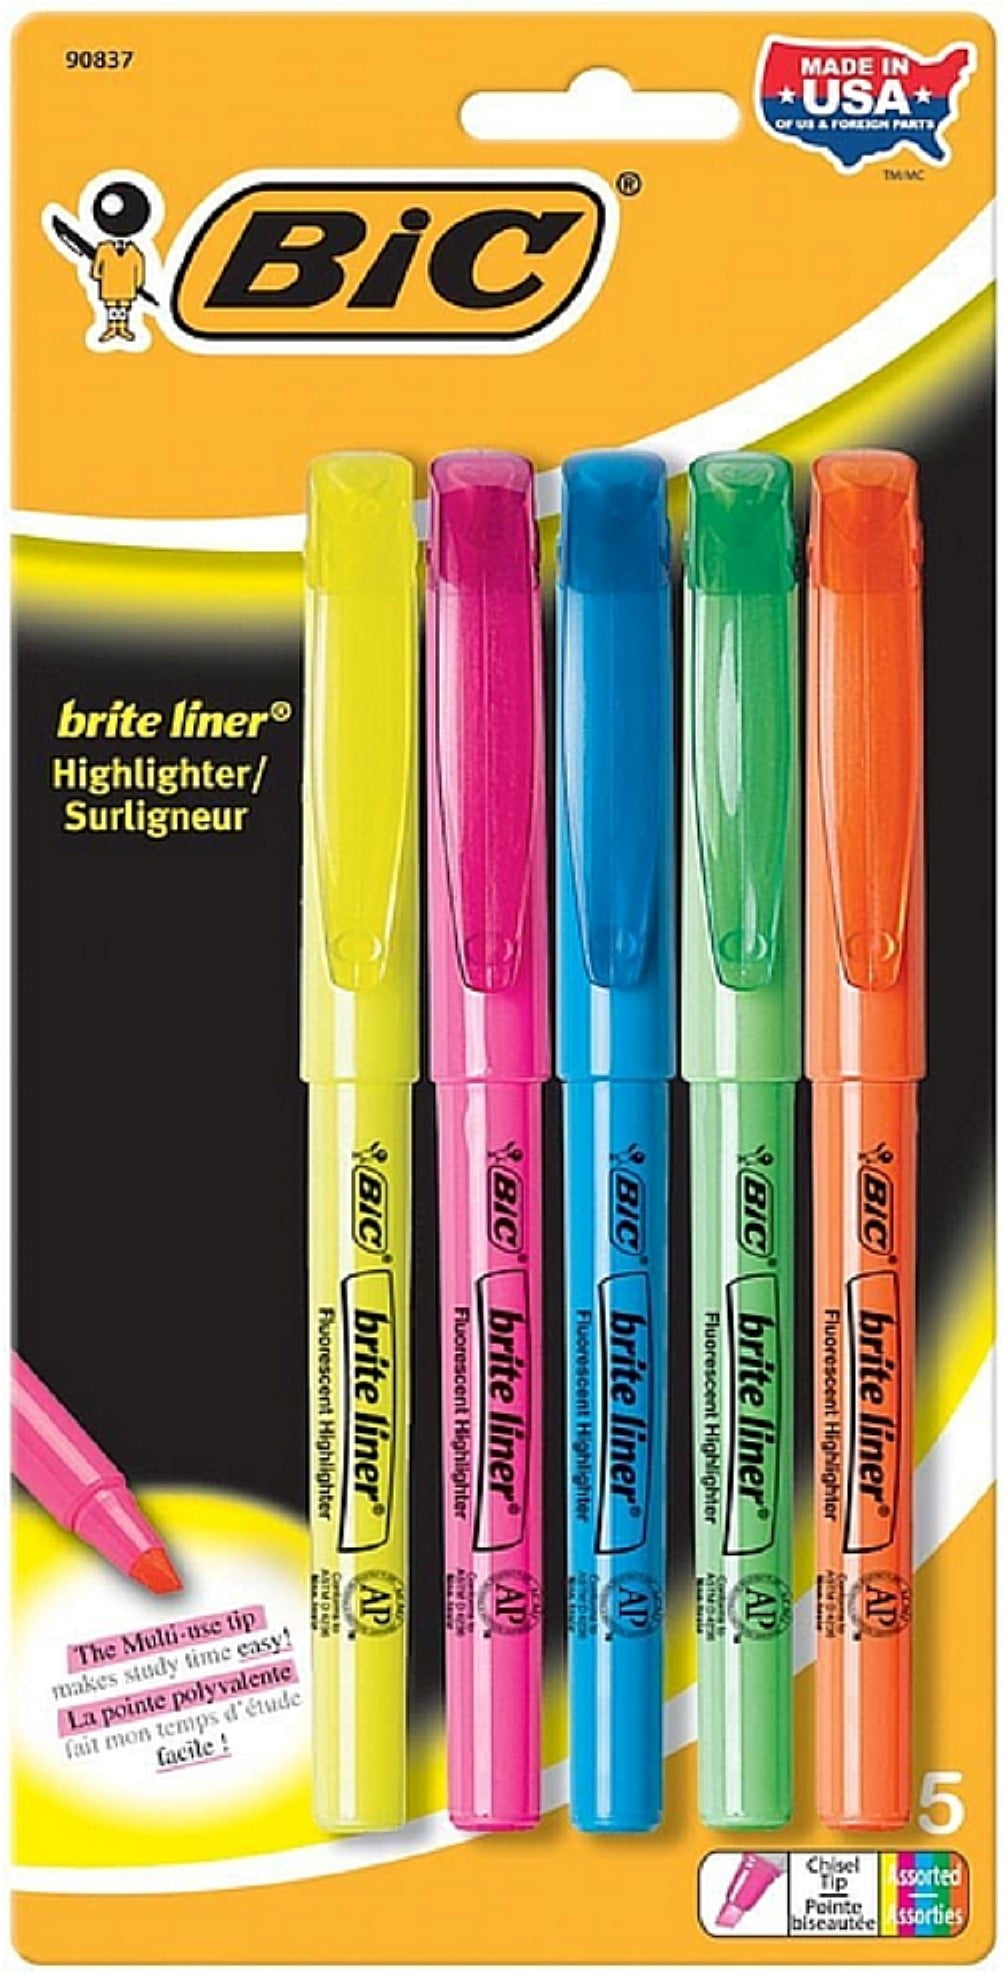 Bic Brite Liner Highlighter 5 Pack 90837 